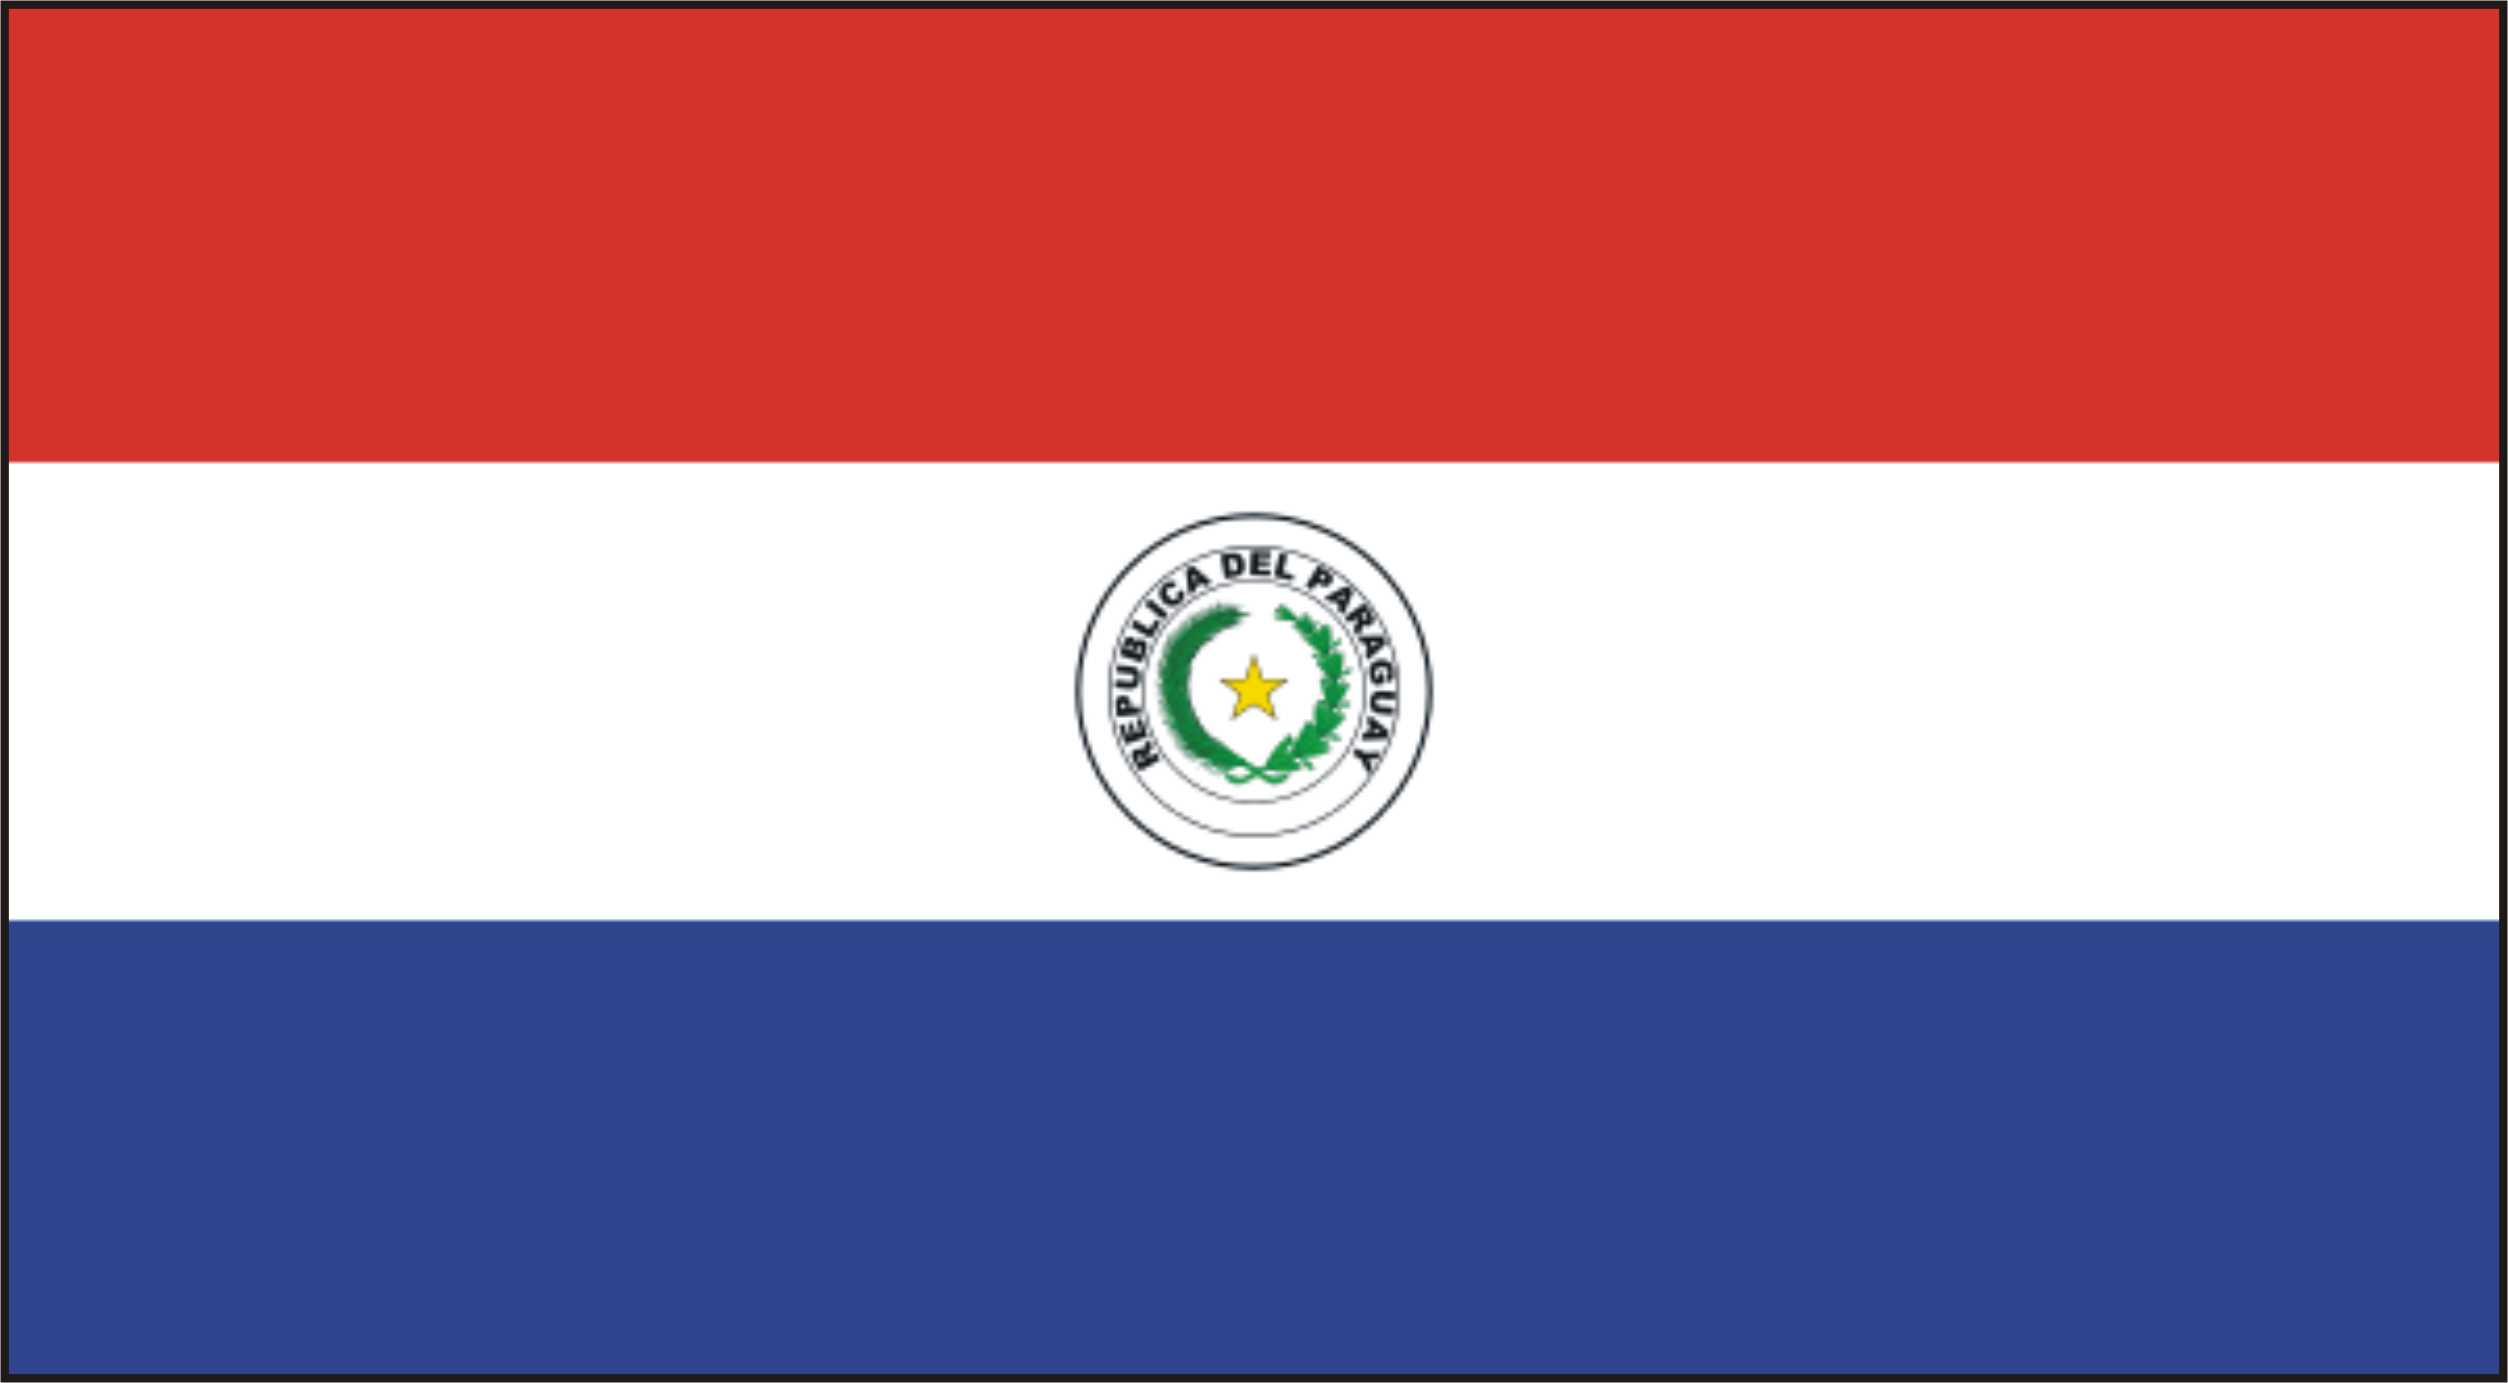 Pa-ra-goay (Paraguay) | Hồ sơ - Sự kiện - Nhân chứng